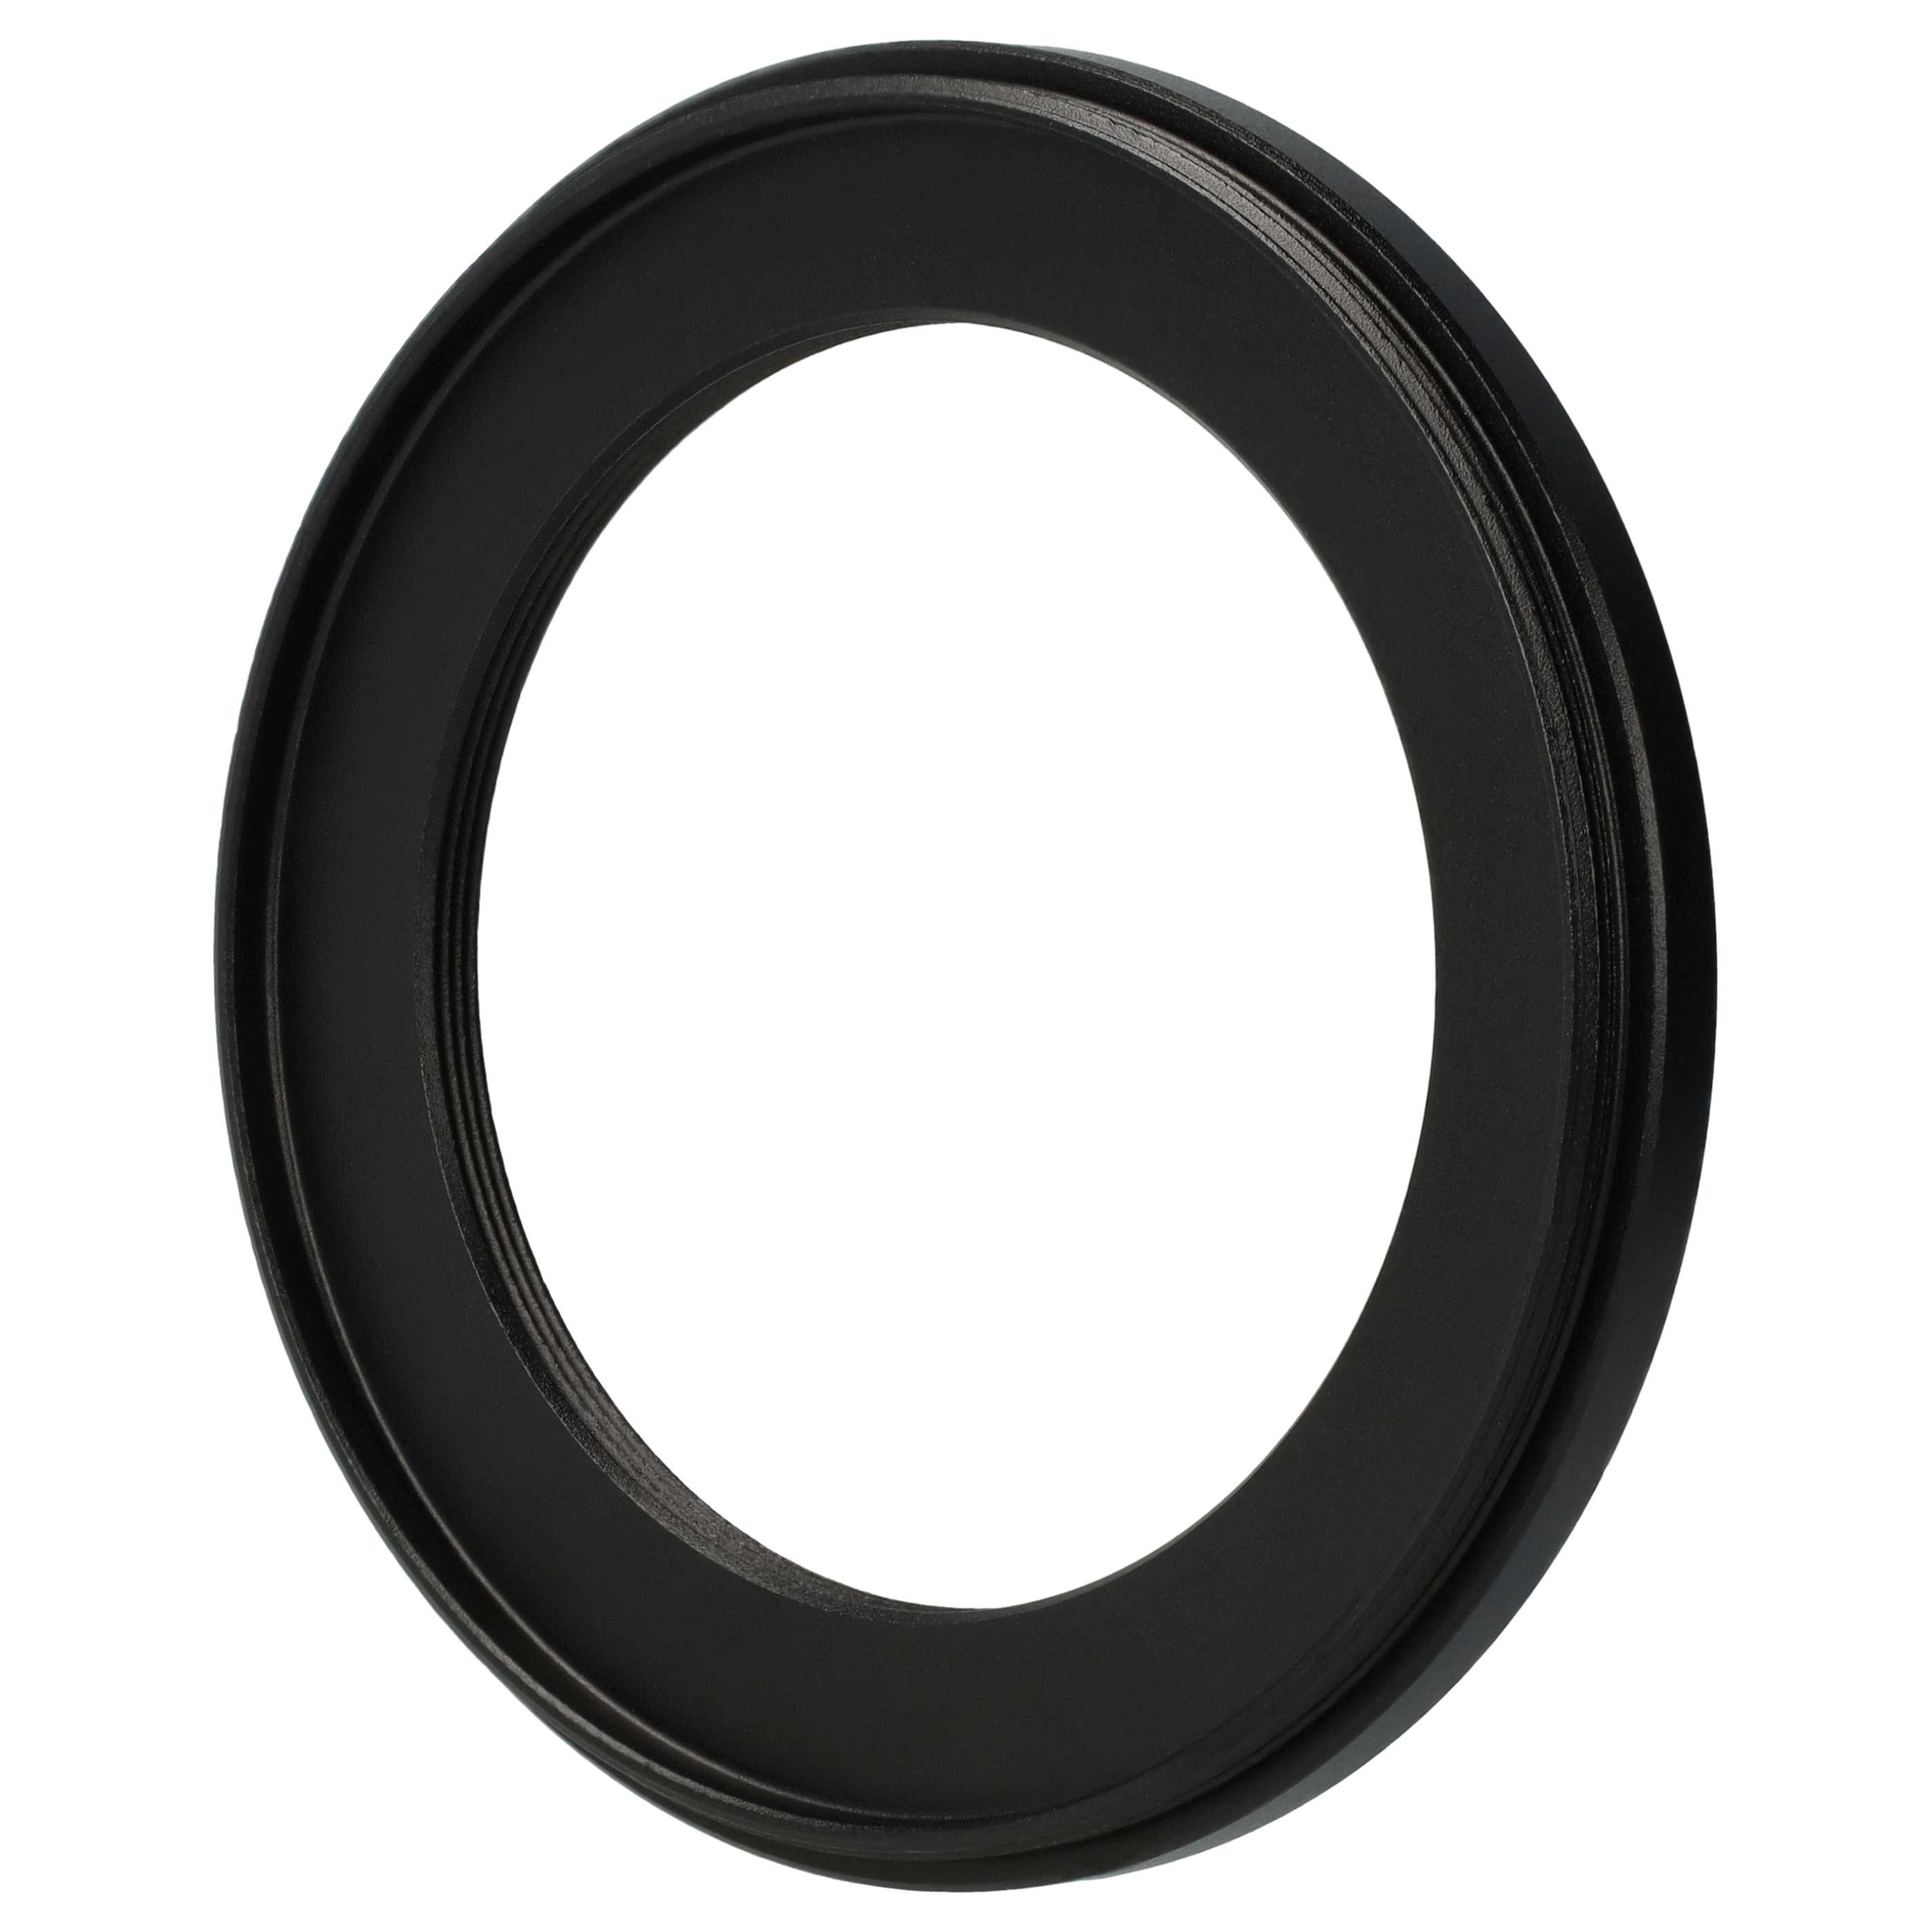 Redukcja filtrowa adapter Step-Down 67 mm - 49 mm pasująca do obiektywu - metal, czarny